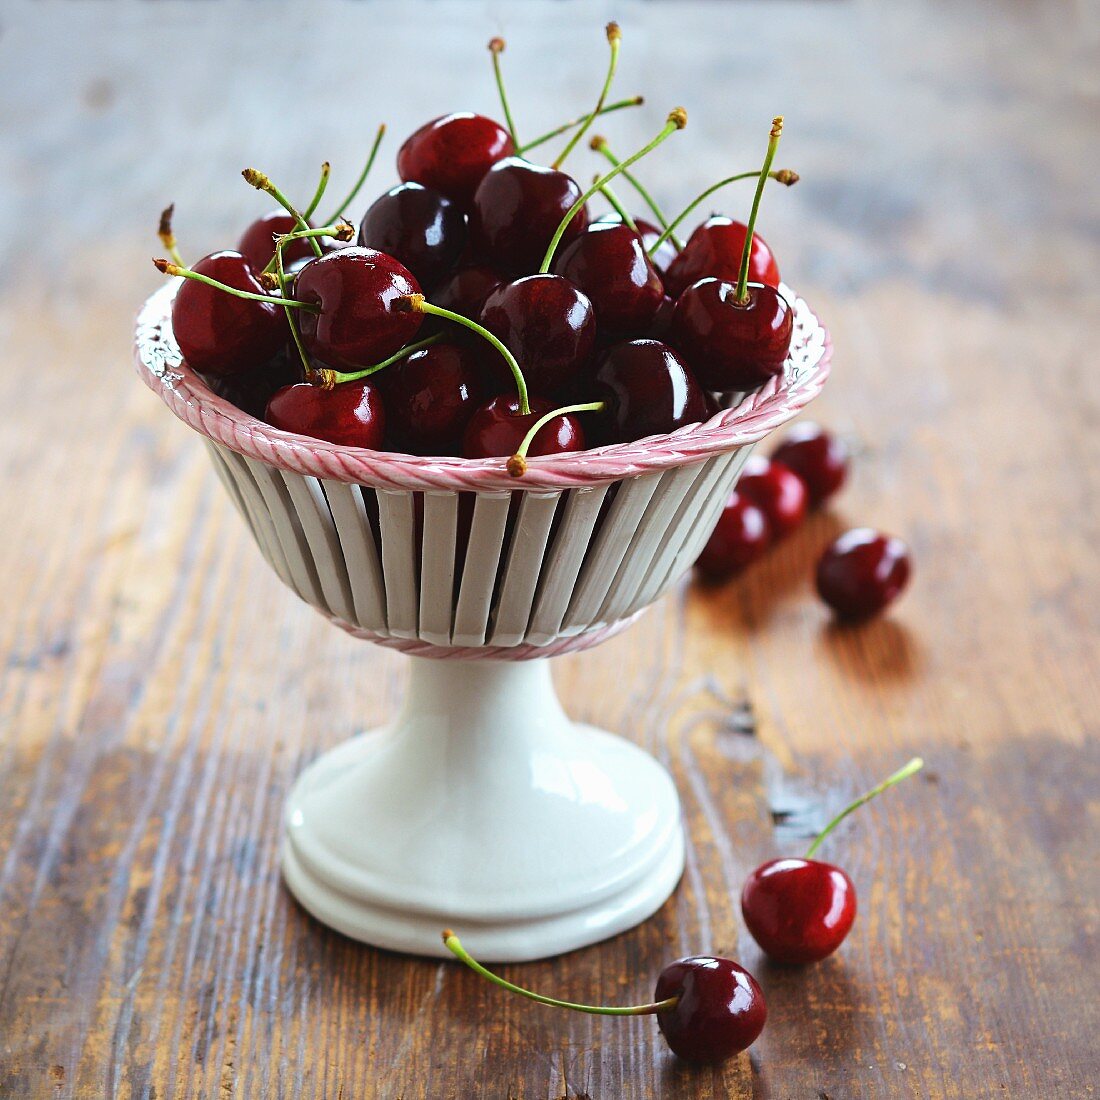 Cherries in a ceramic goblet